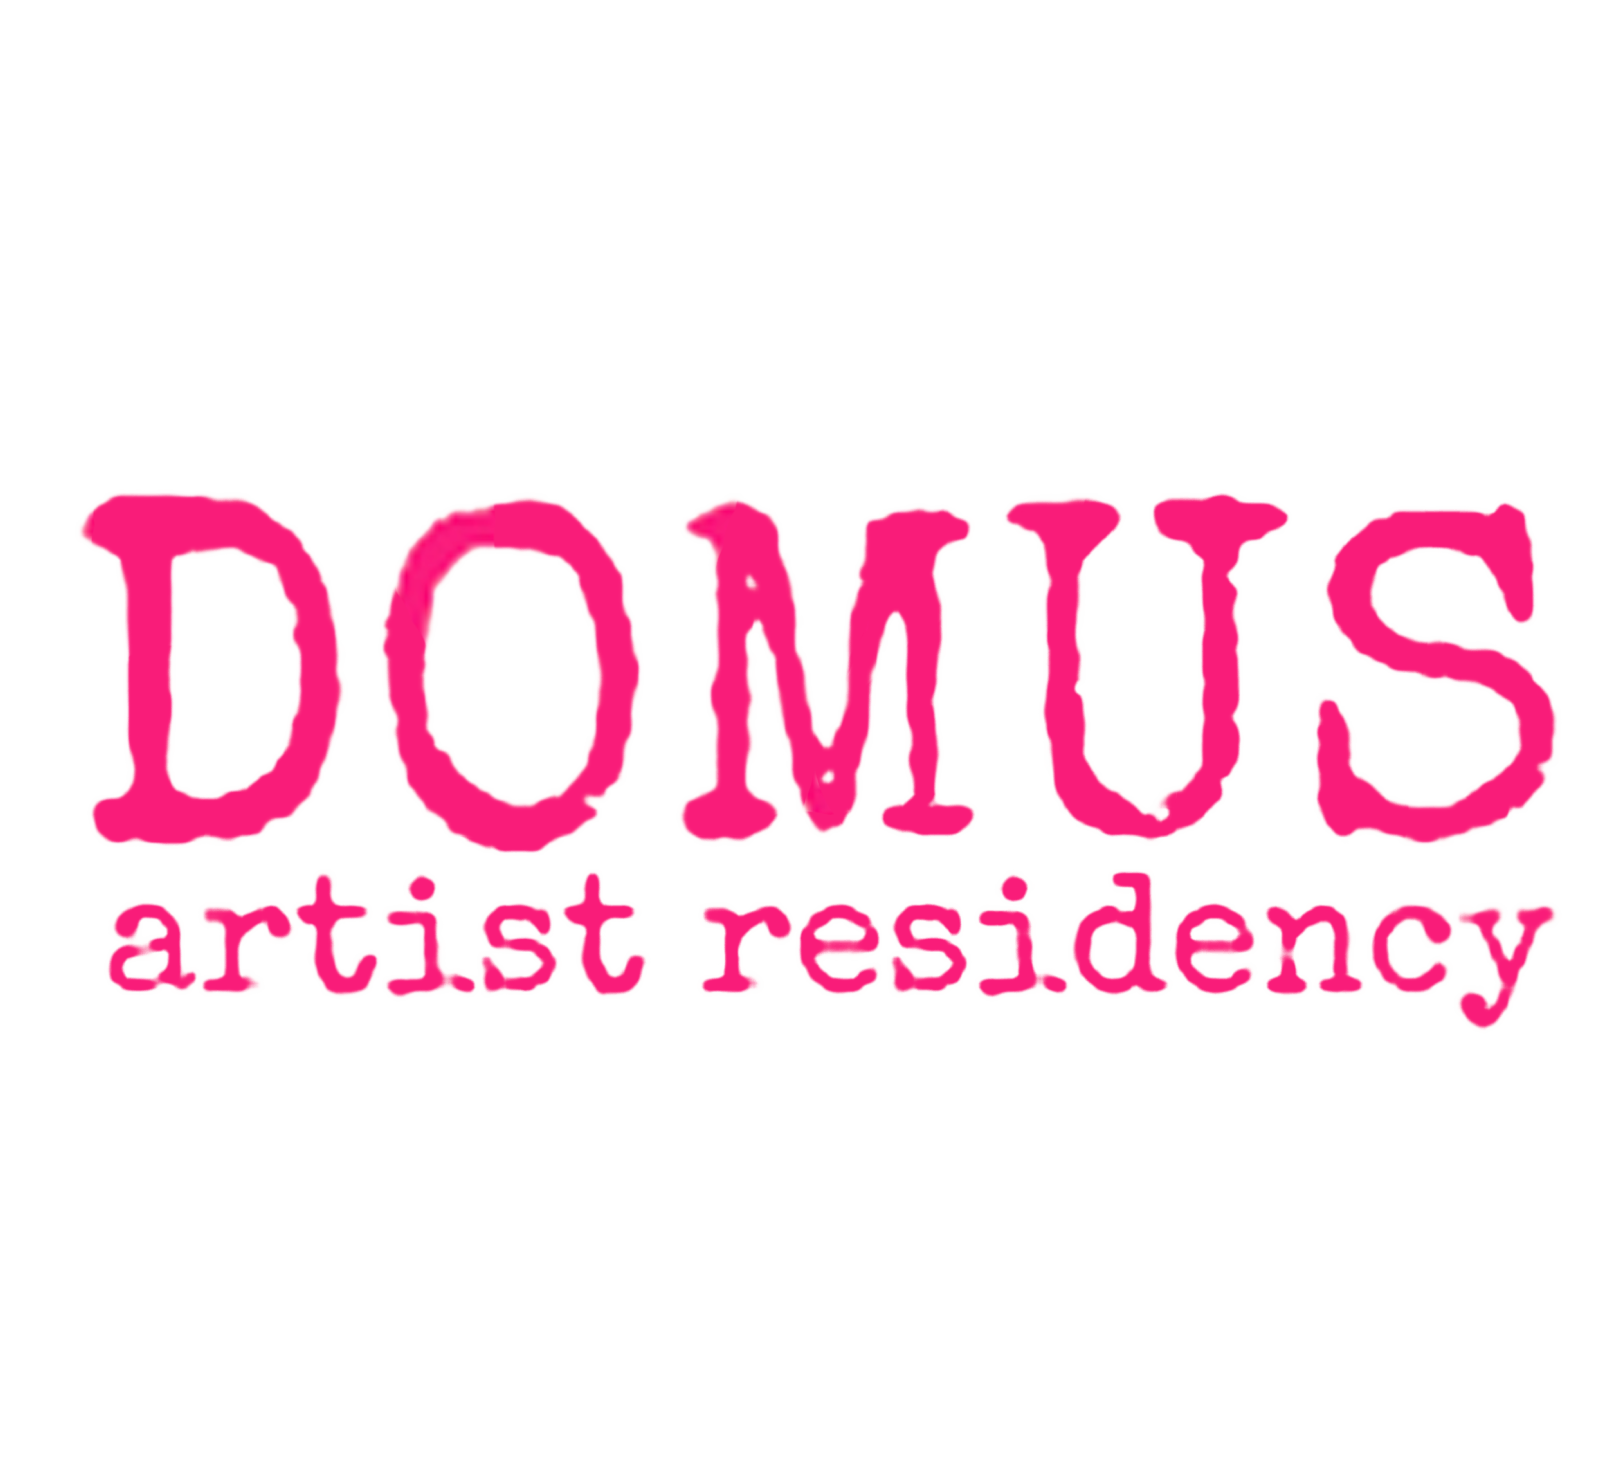 DOMUS artist residency